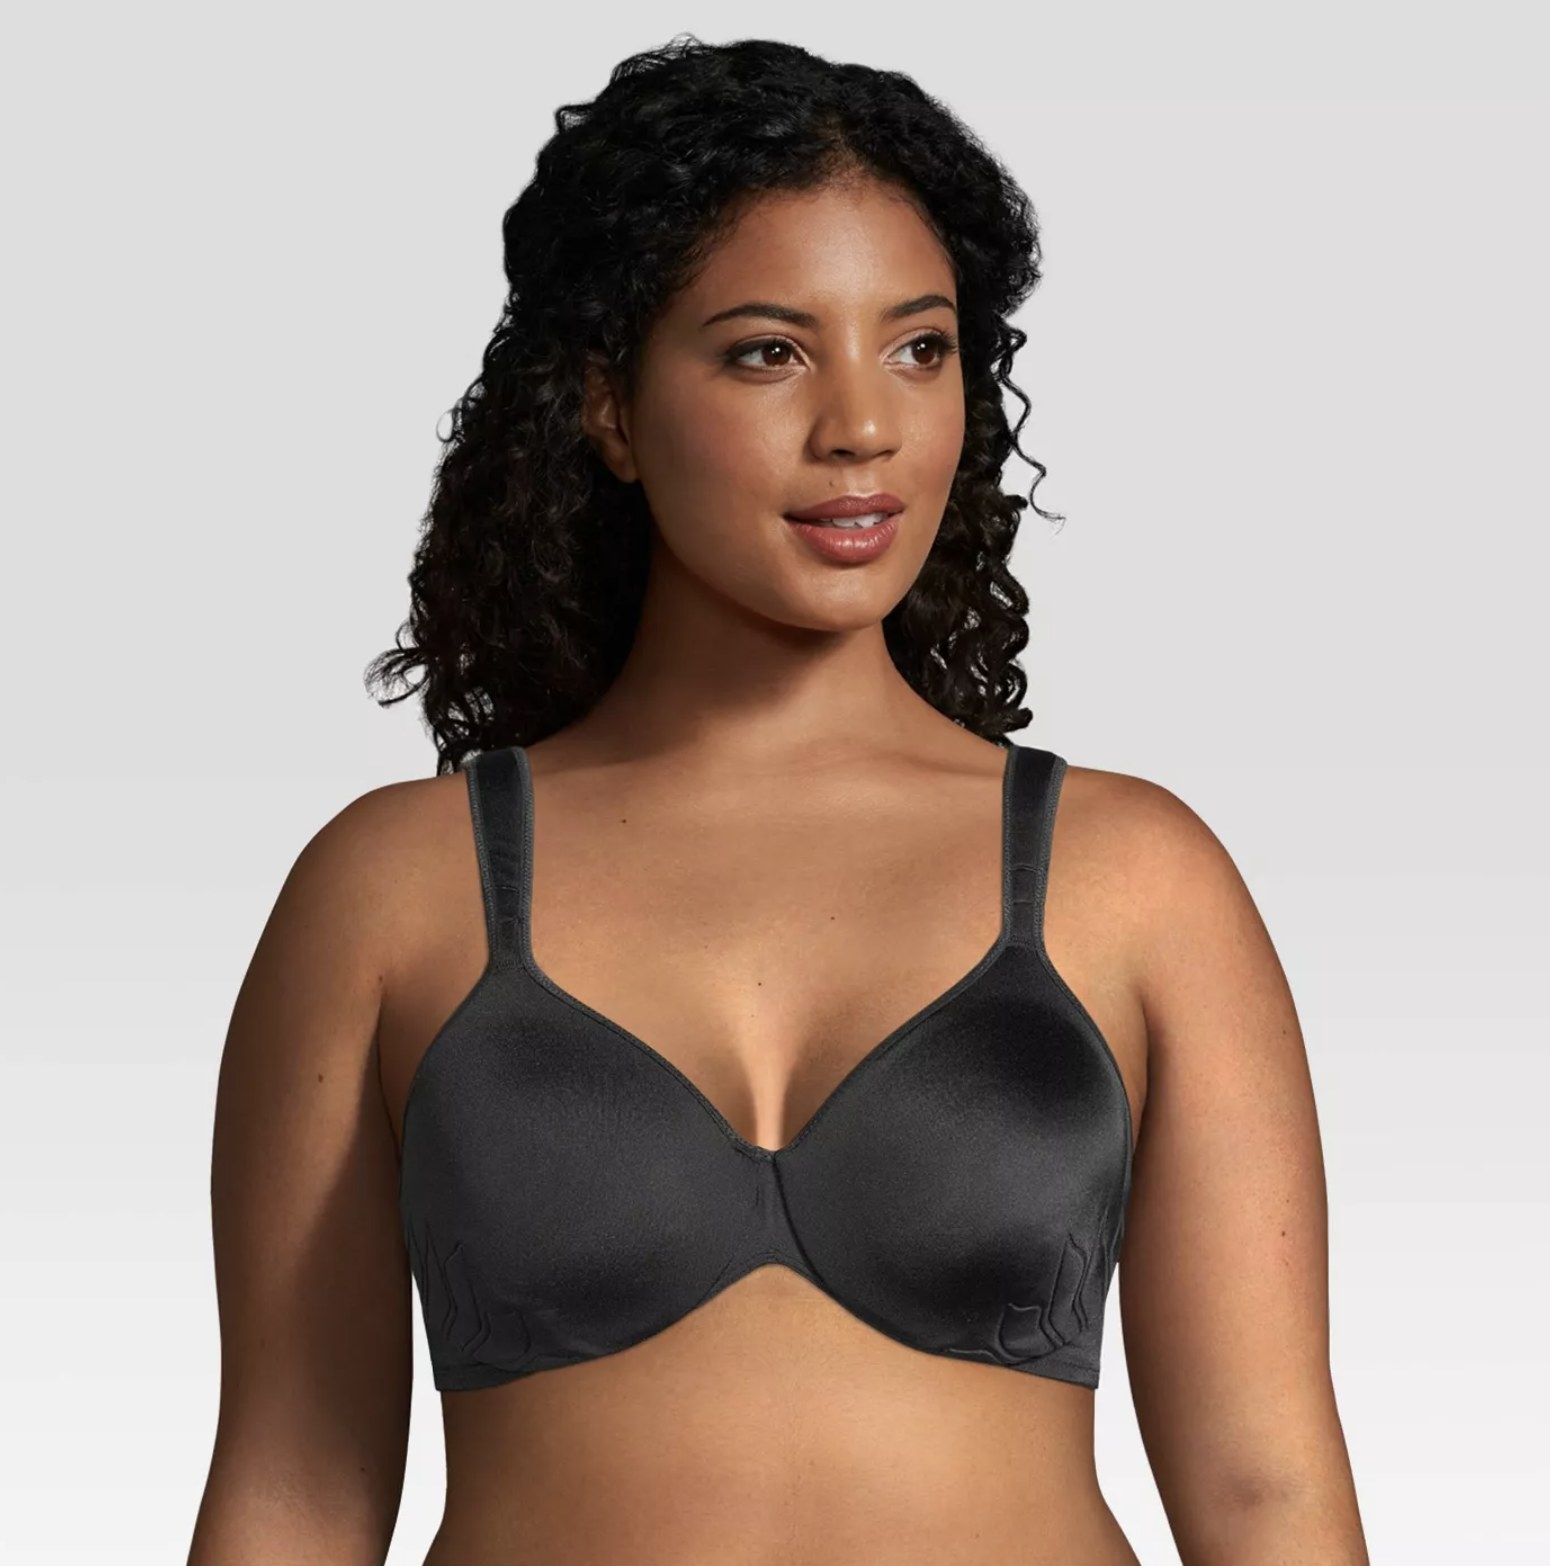 Model wearing the bra in black